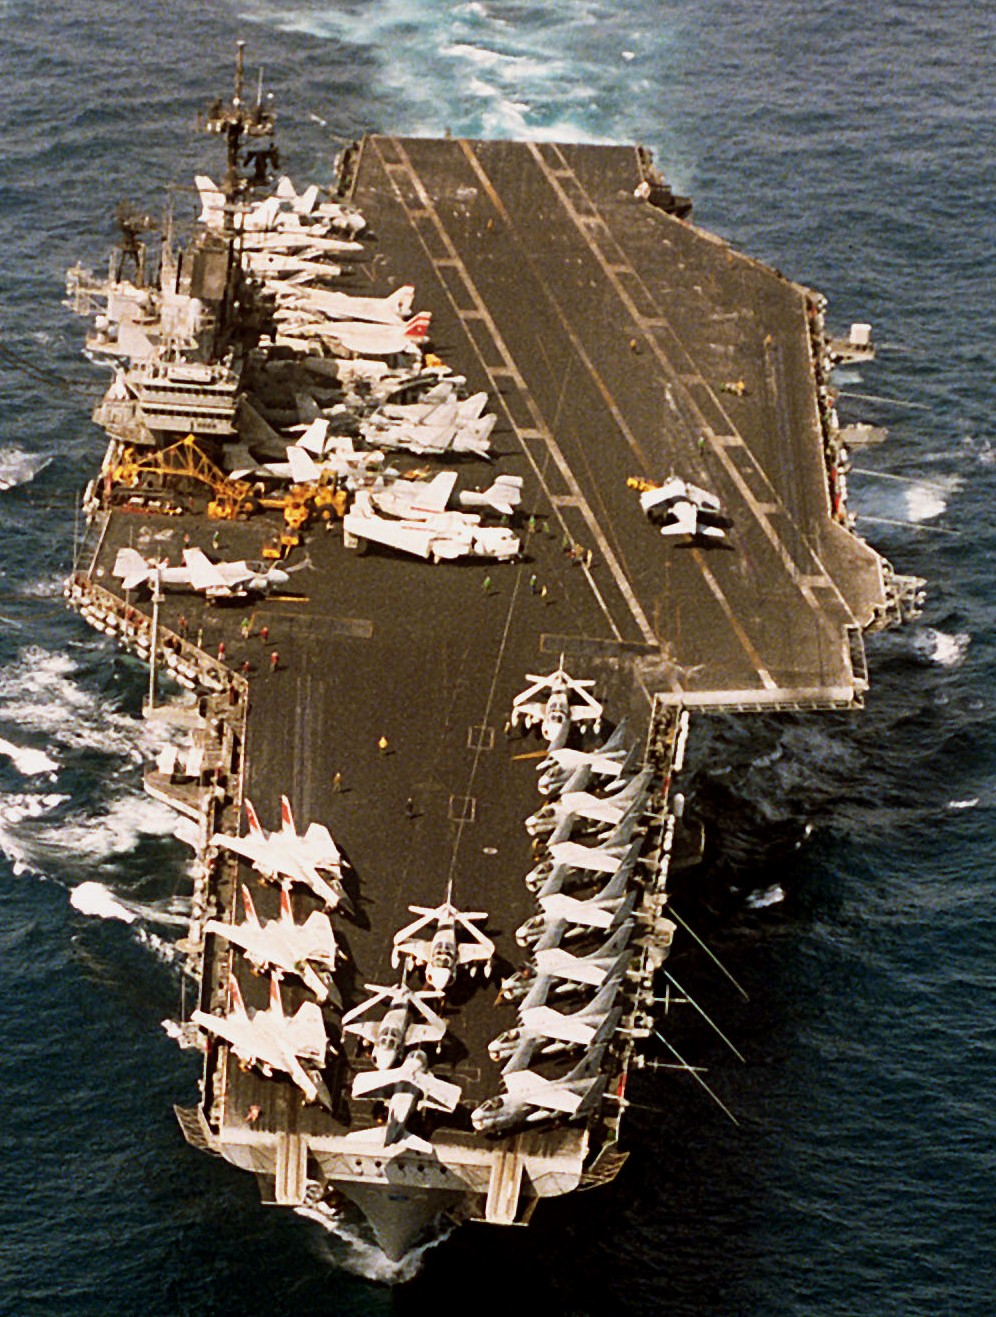 cv-59 uss forrestal aircraft carrier air wing cvw-6 us navy 66